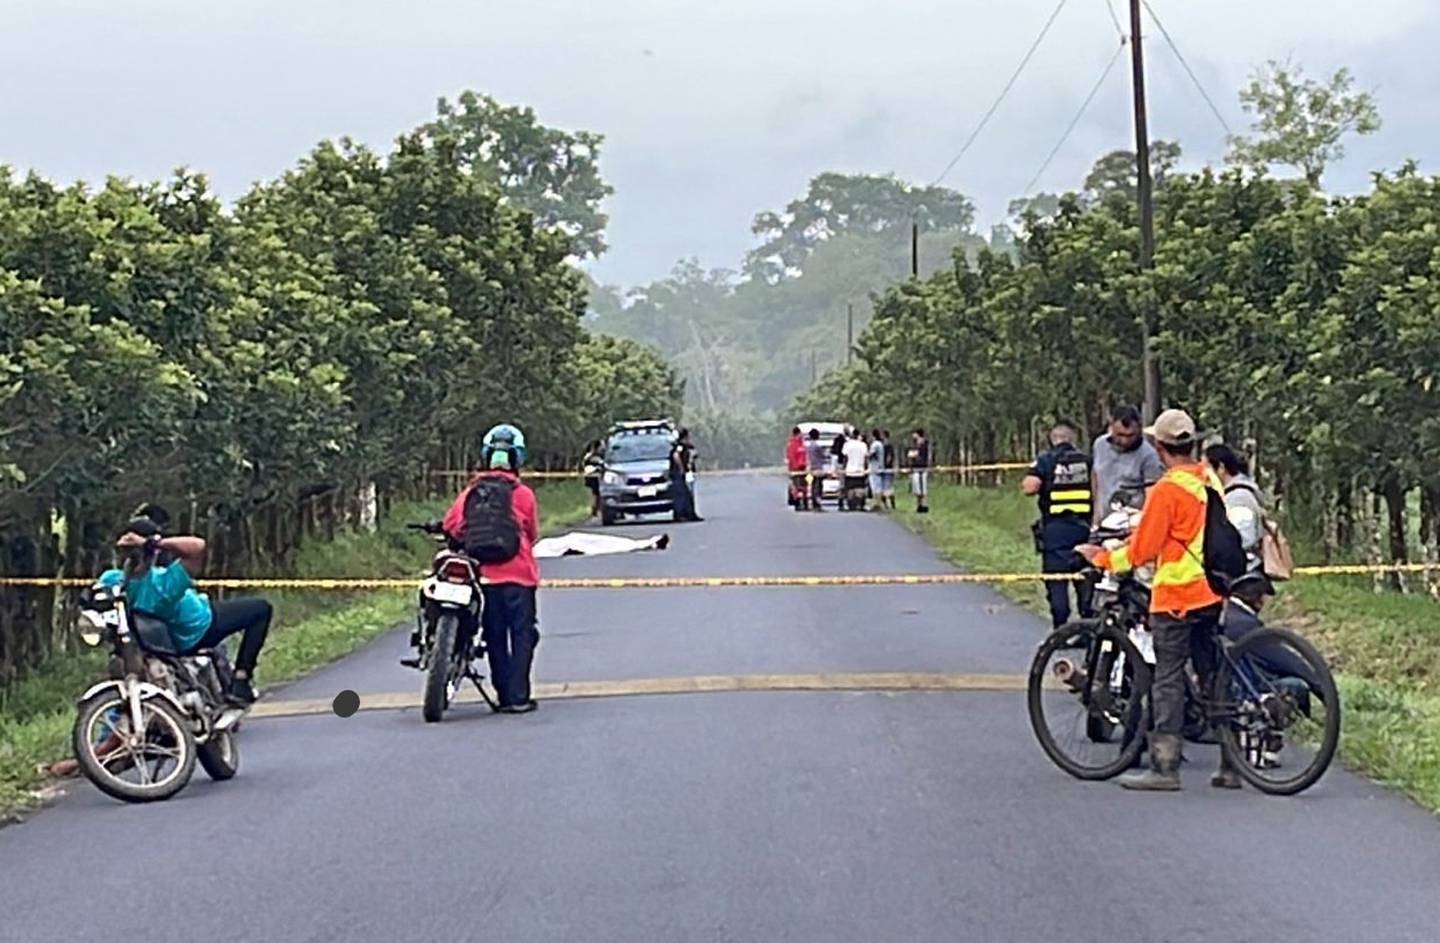 La carretera amaneció cerrada este domingo, mientras los agentes judiciales realizaban la recolección de indicios y el posterior levantamiento del cuerpo. Foto; Reiner Montero.